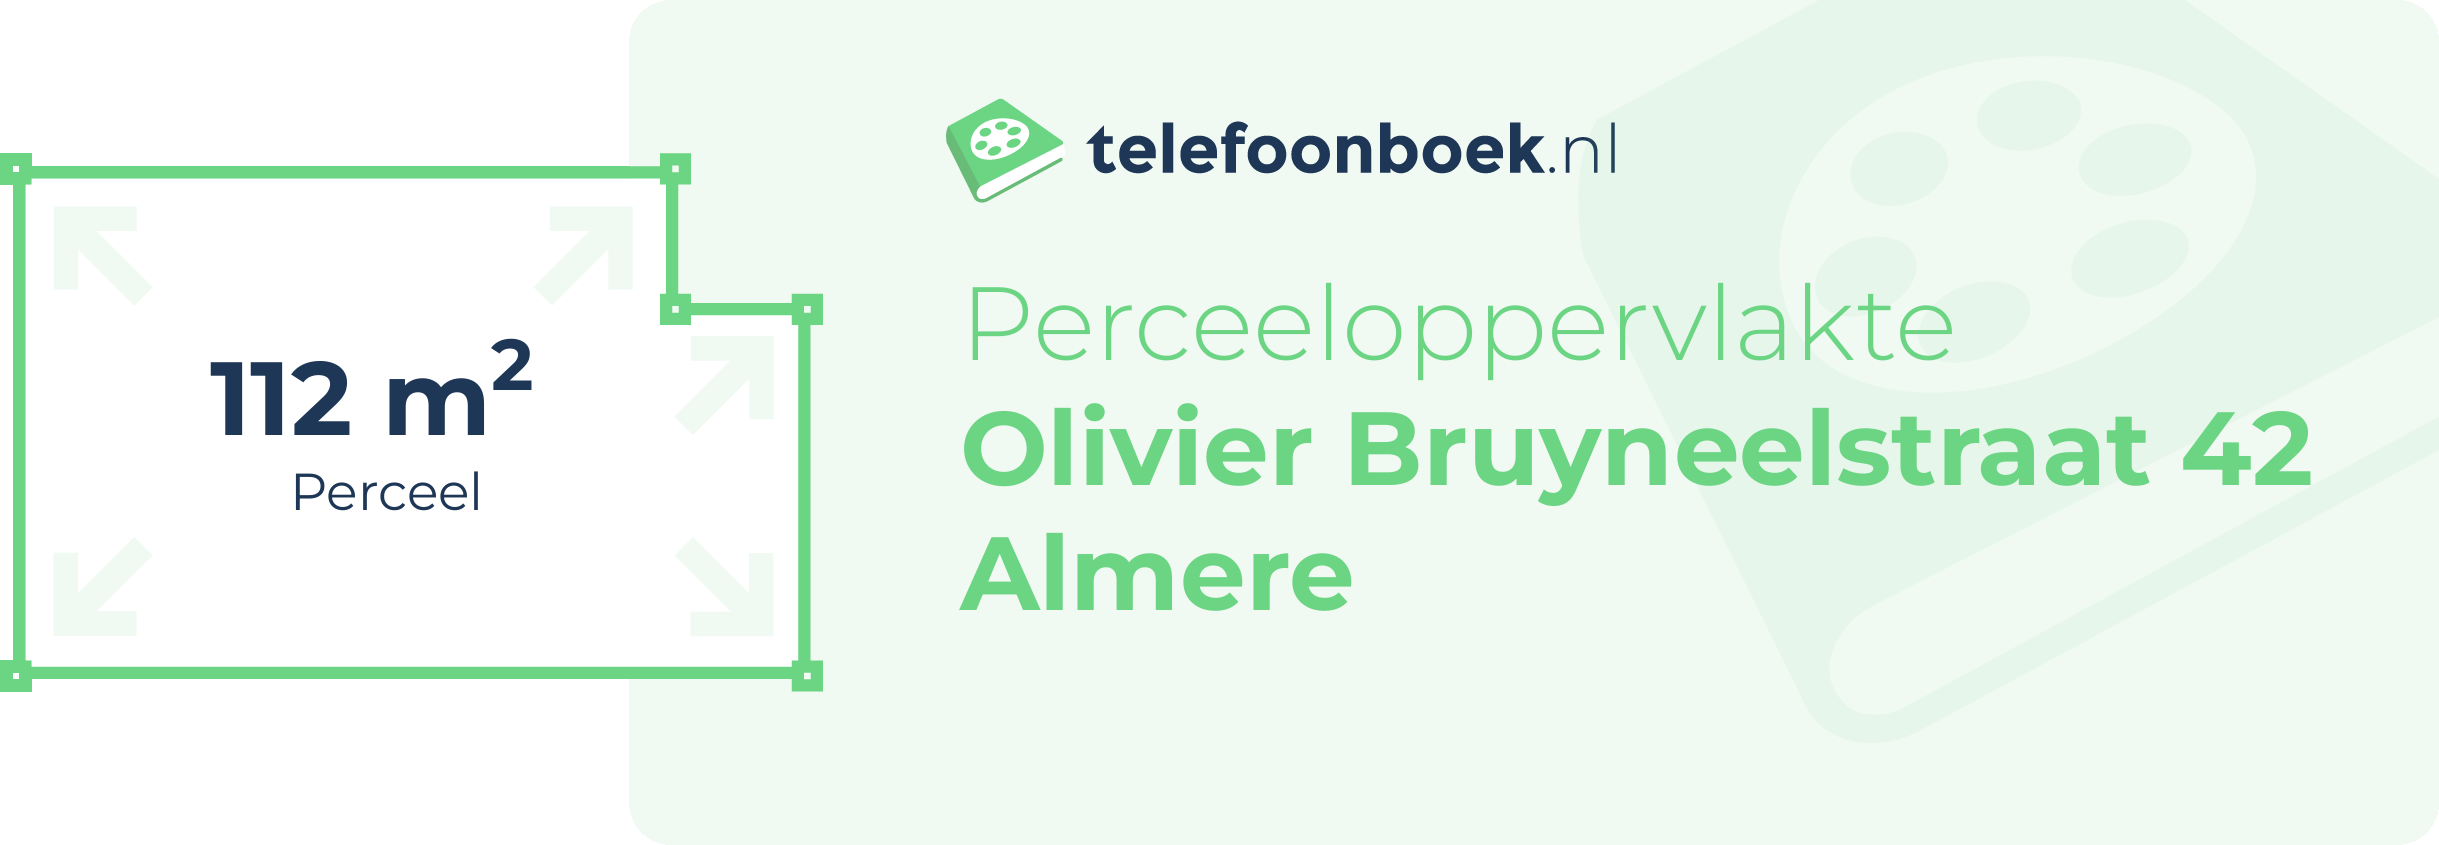 Perceeloppervlakte Olivier Bruyneelstraat 42 Almere